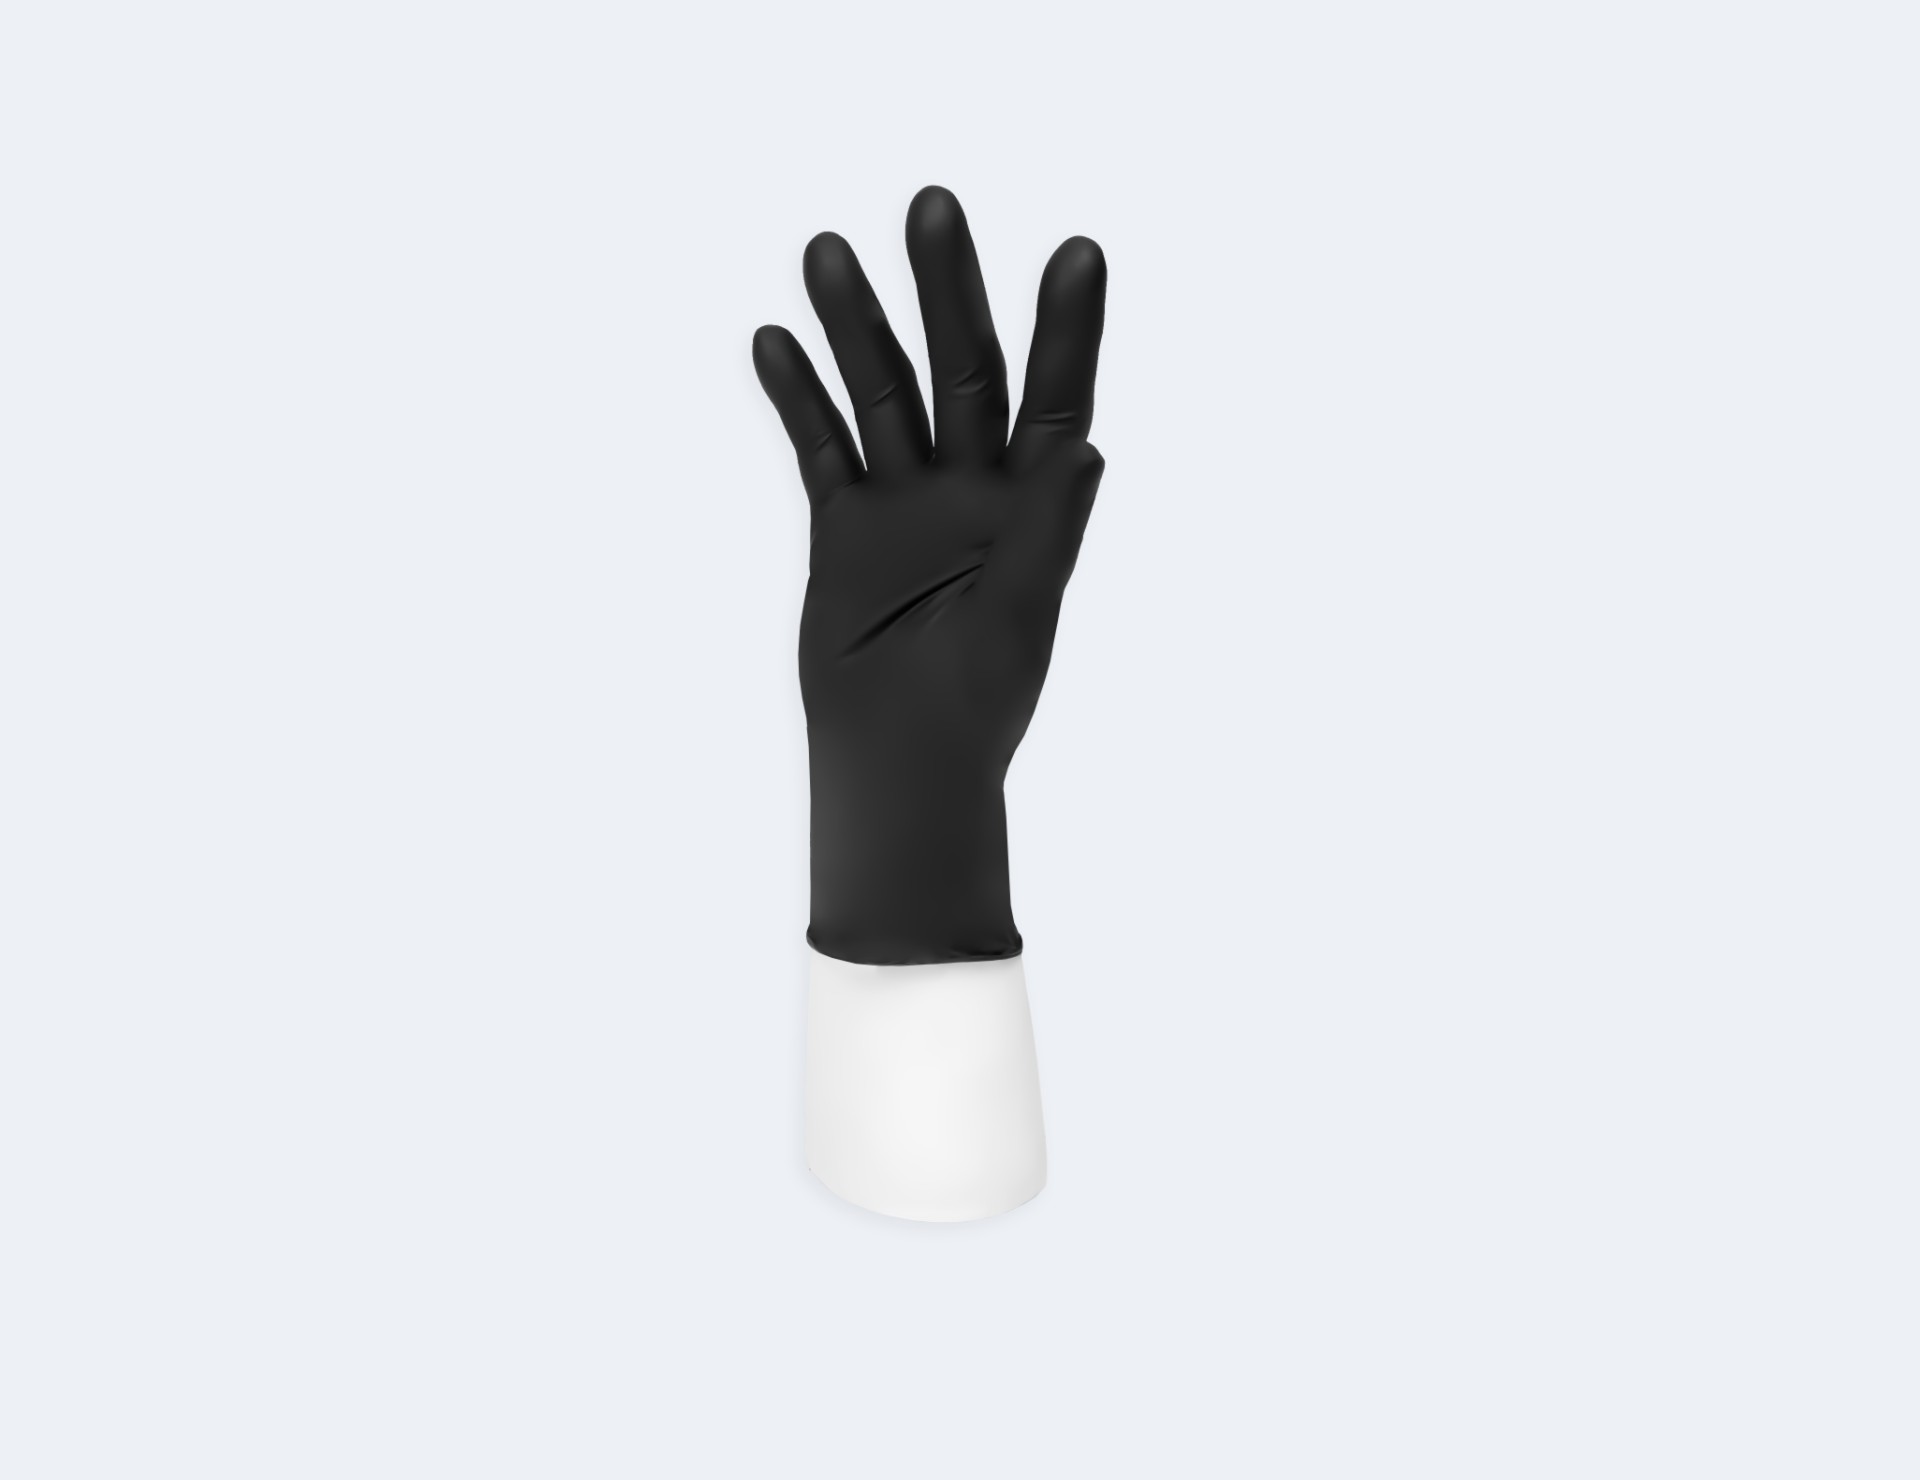 Vinyl Synmax G2 (Exam) Gloves （vinyl glove）